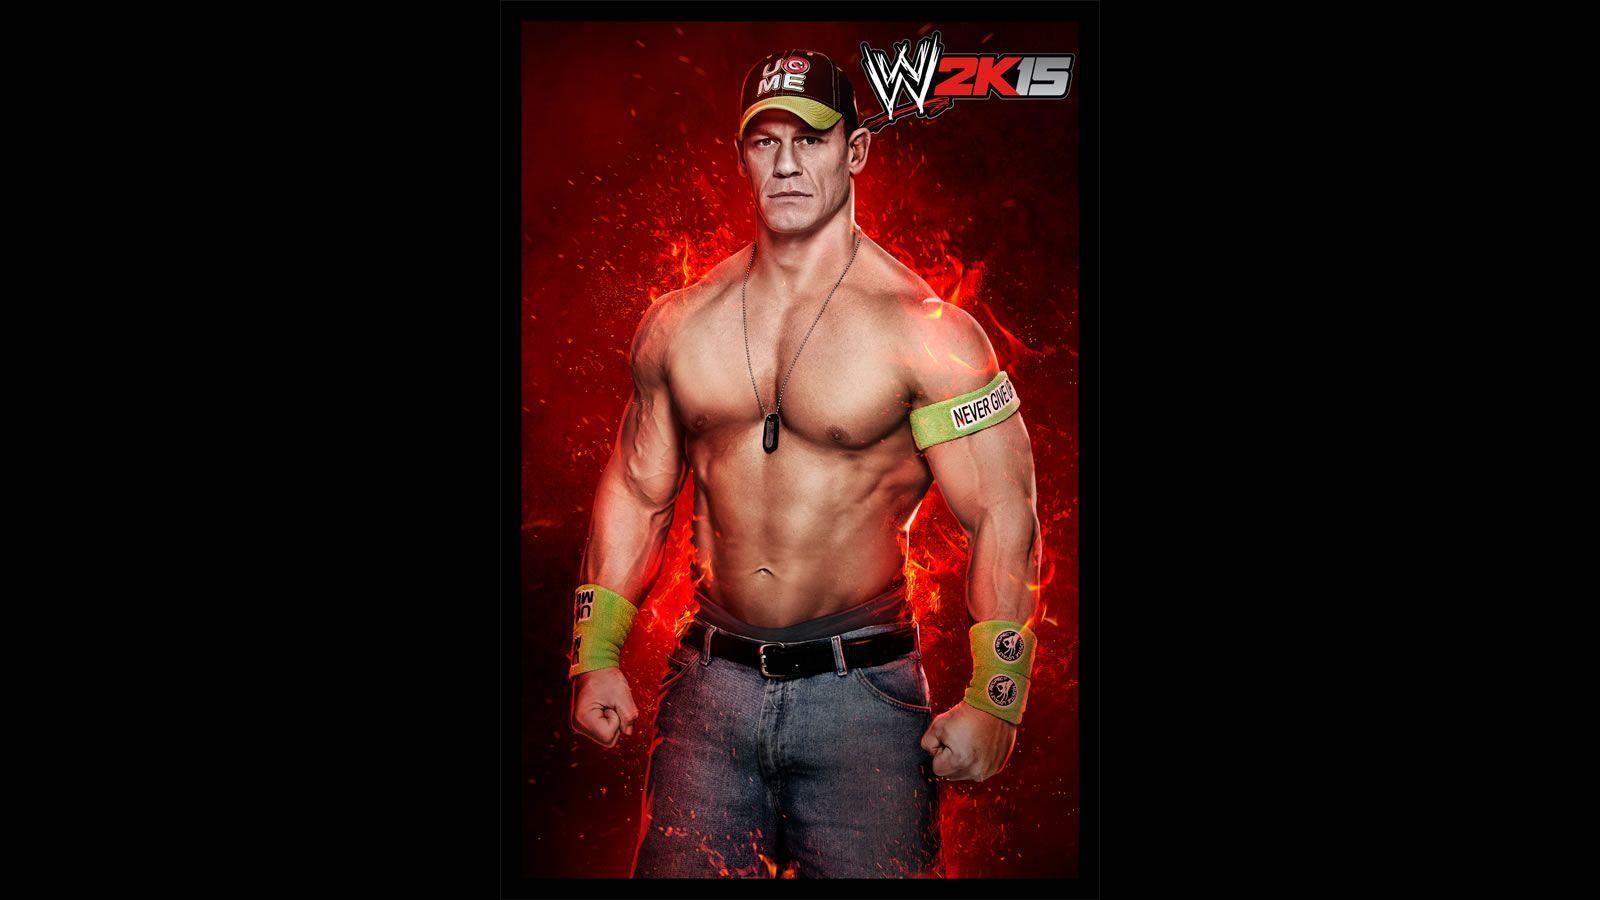 WWE John Cena Mobile Wallpapers 2015 - Wallpaper Cave